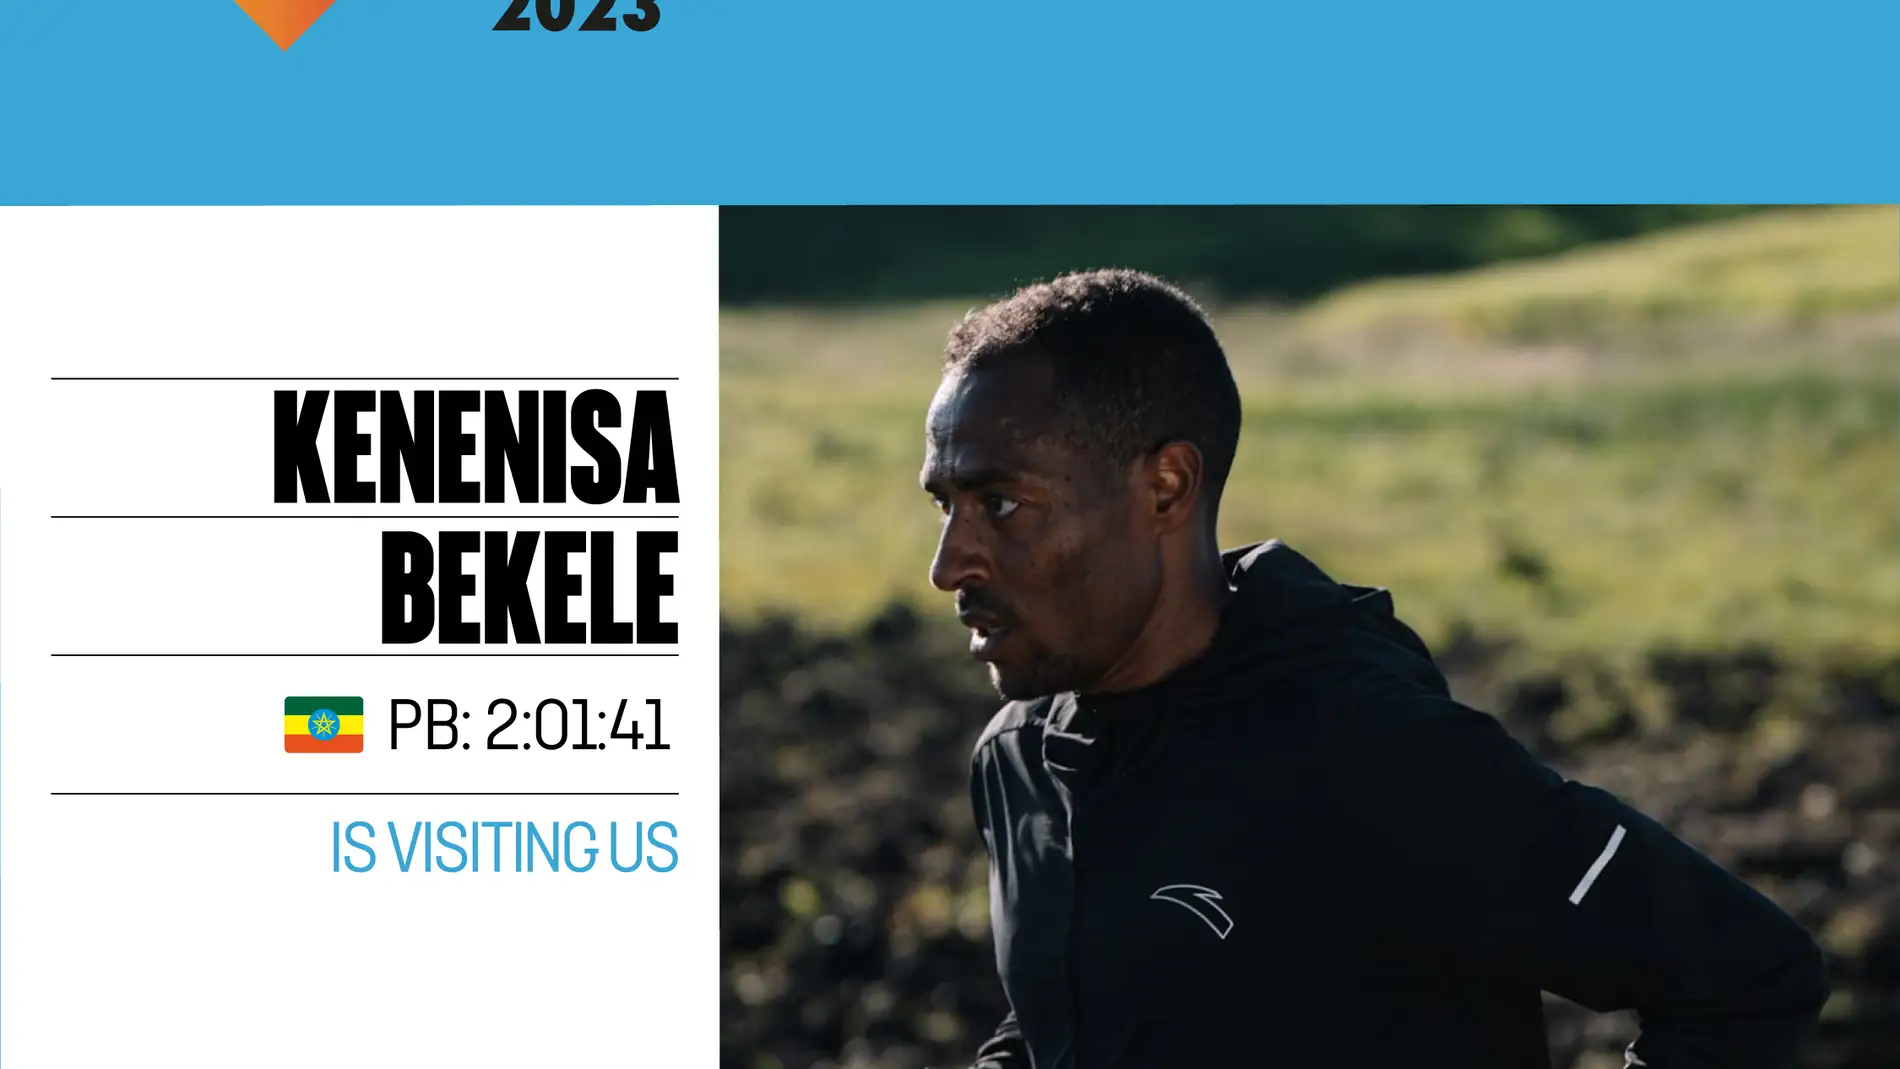 El tres veces campeón olímpico Kenenisa Bekele correrá el Maratón Valencia